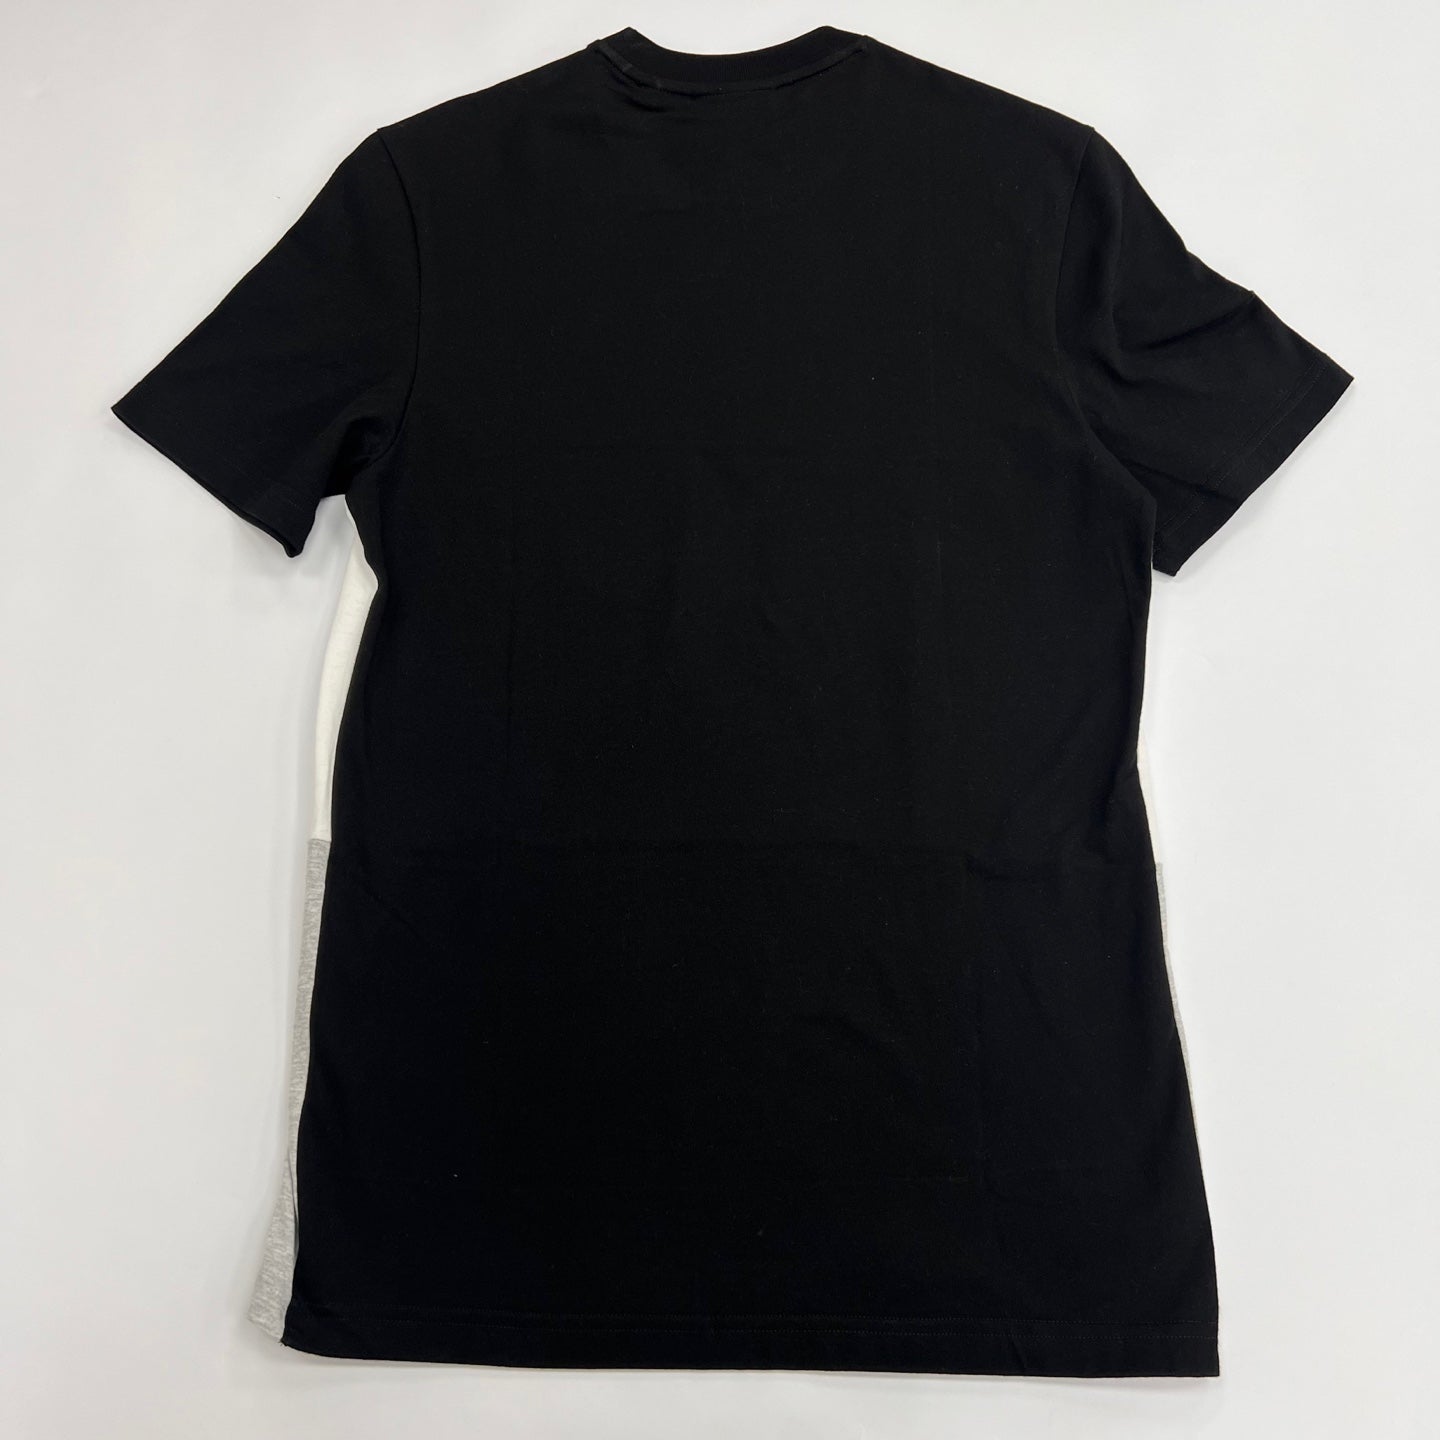 LACOSTE 3D Lettered Colorblock Cotton T-shirt - BLACK/GREY